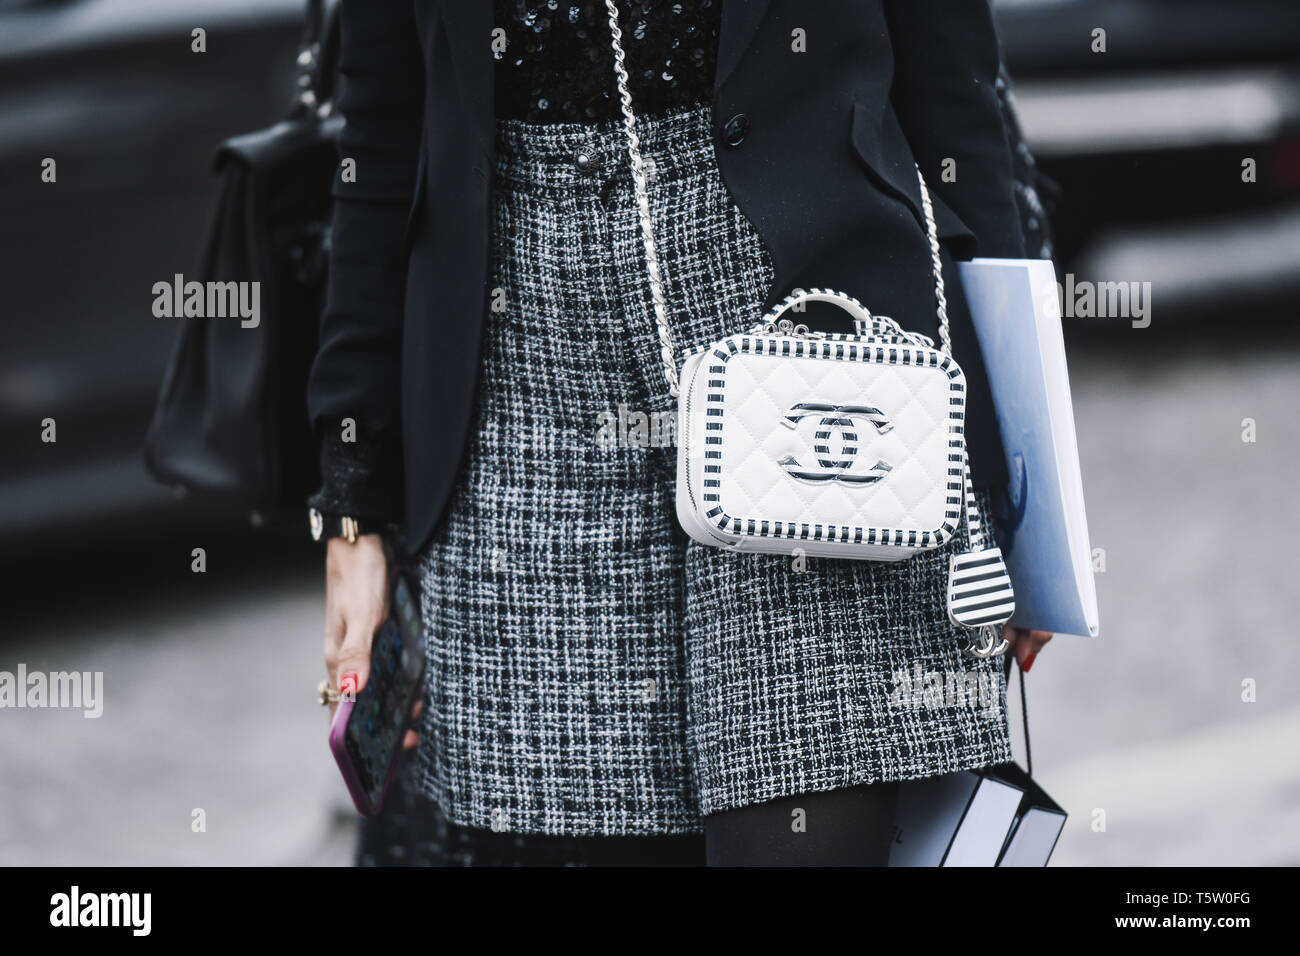 Paris, France - 05 mars 2019 : Tenue Street style - Femme portant sac à main Chanel après un défilé de mode pendant la Fashion Week de Paris - PFWFW19 Banque D'Images